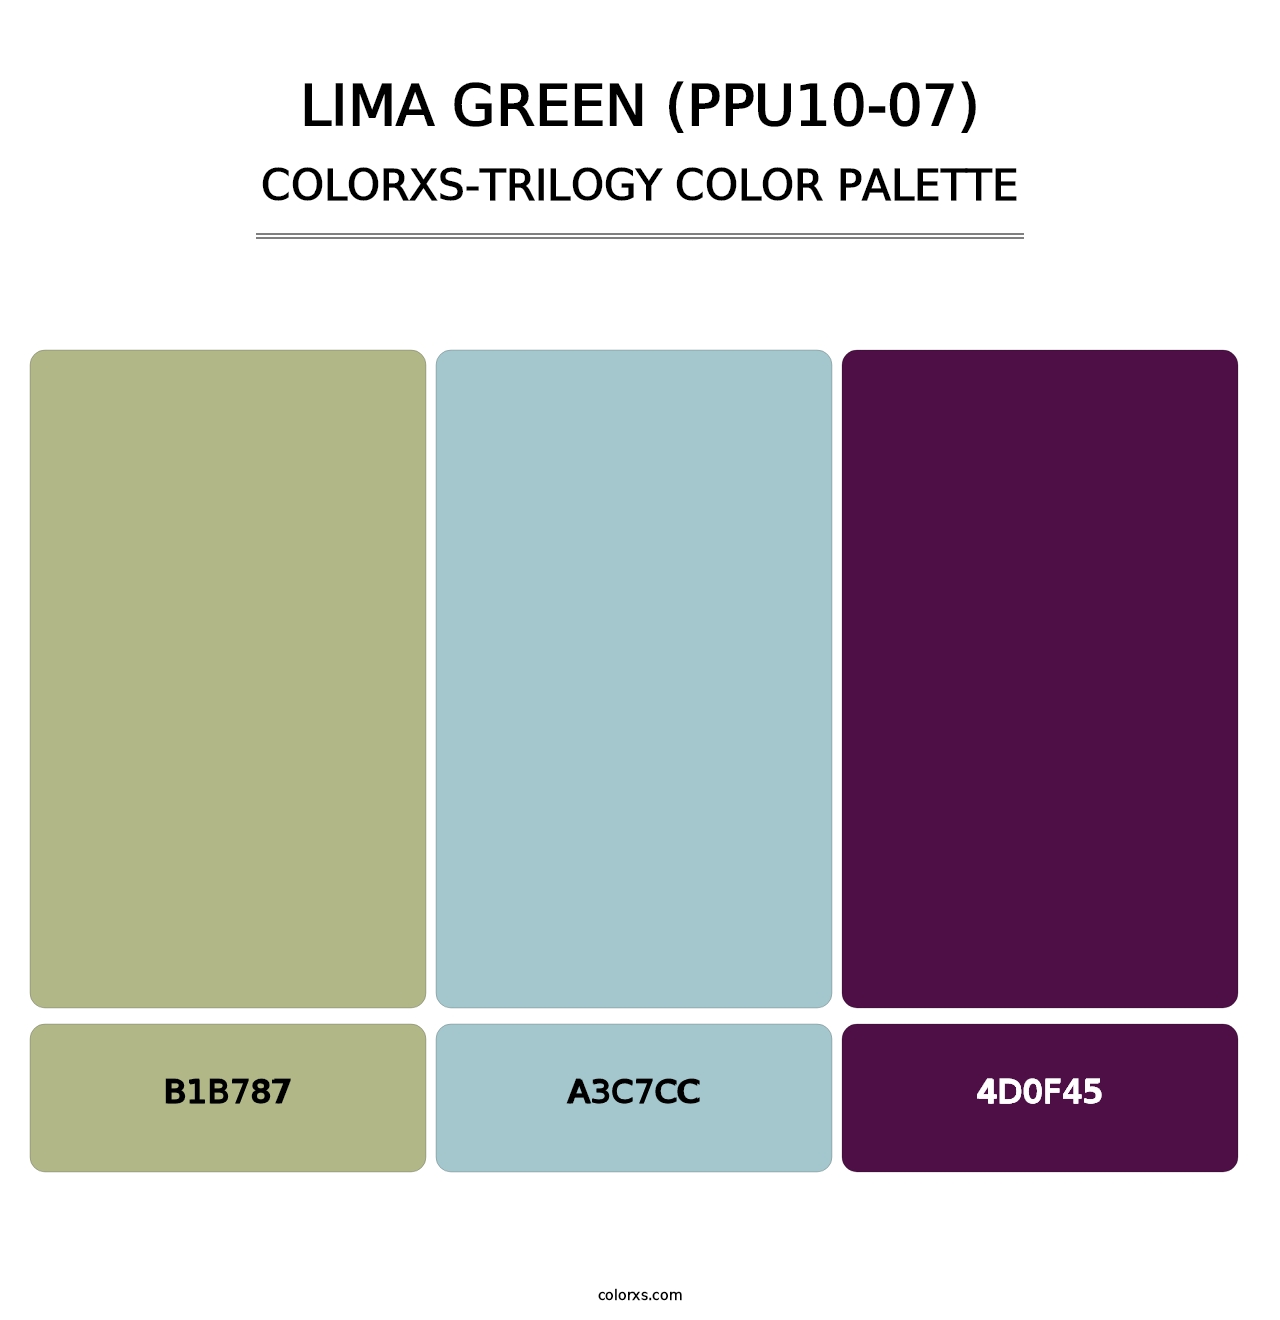 Lima Green (PPU10-07) - Colorxs Trilogy Palette